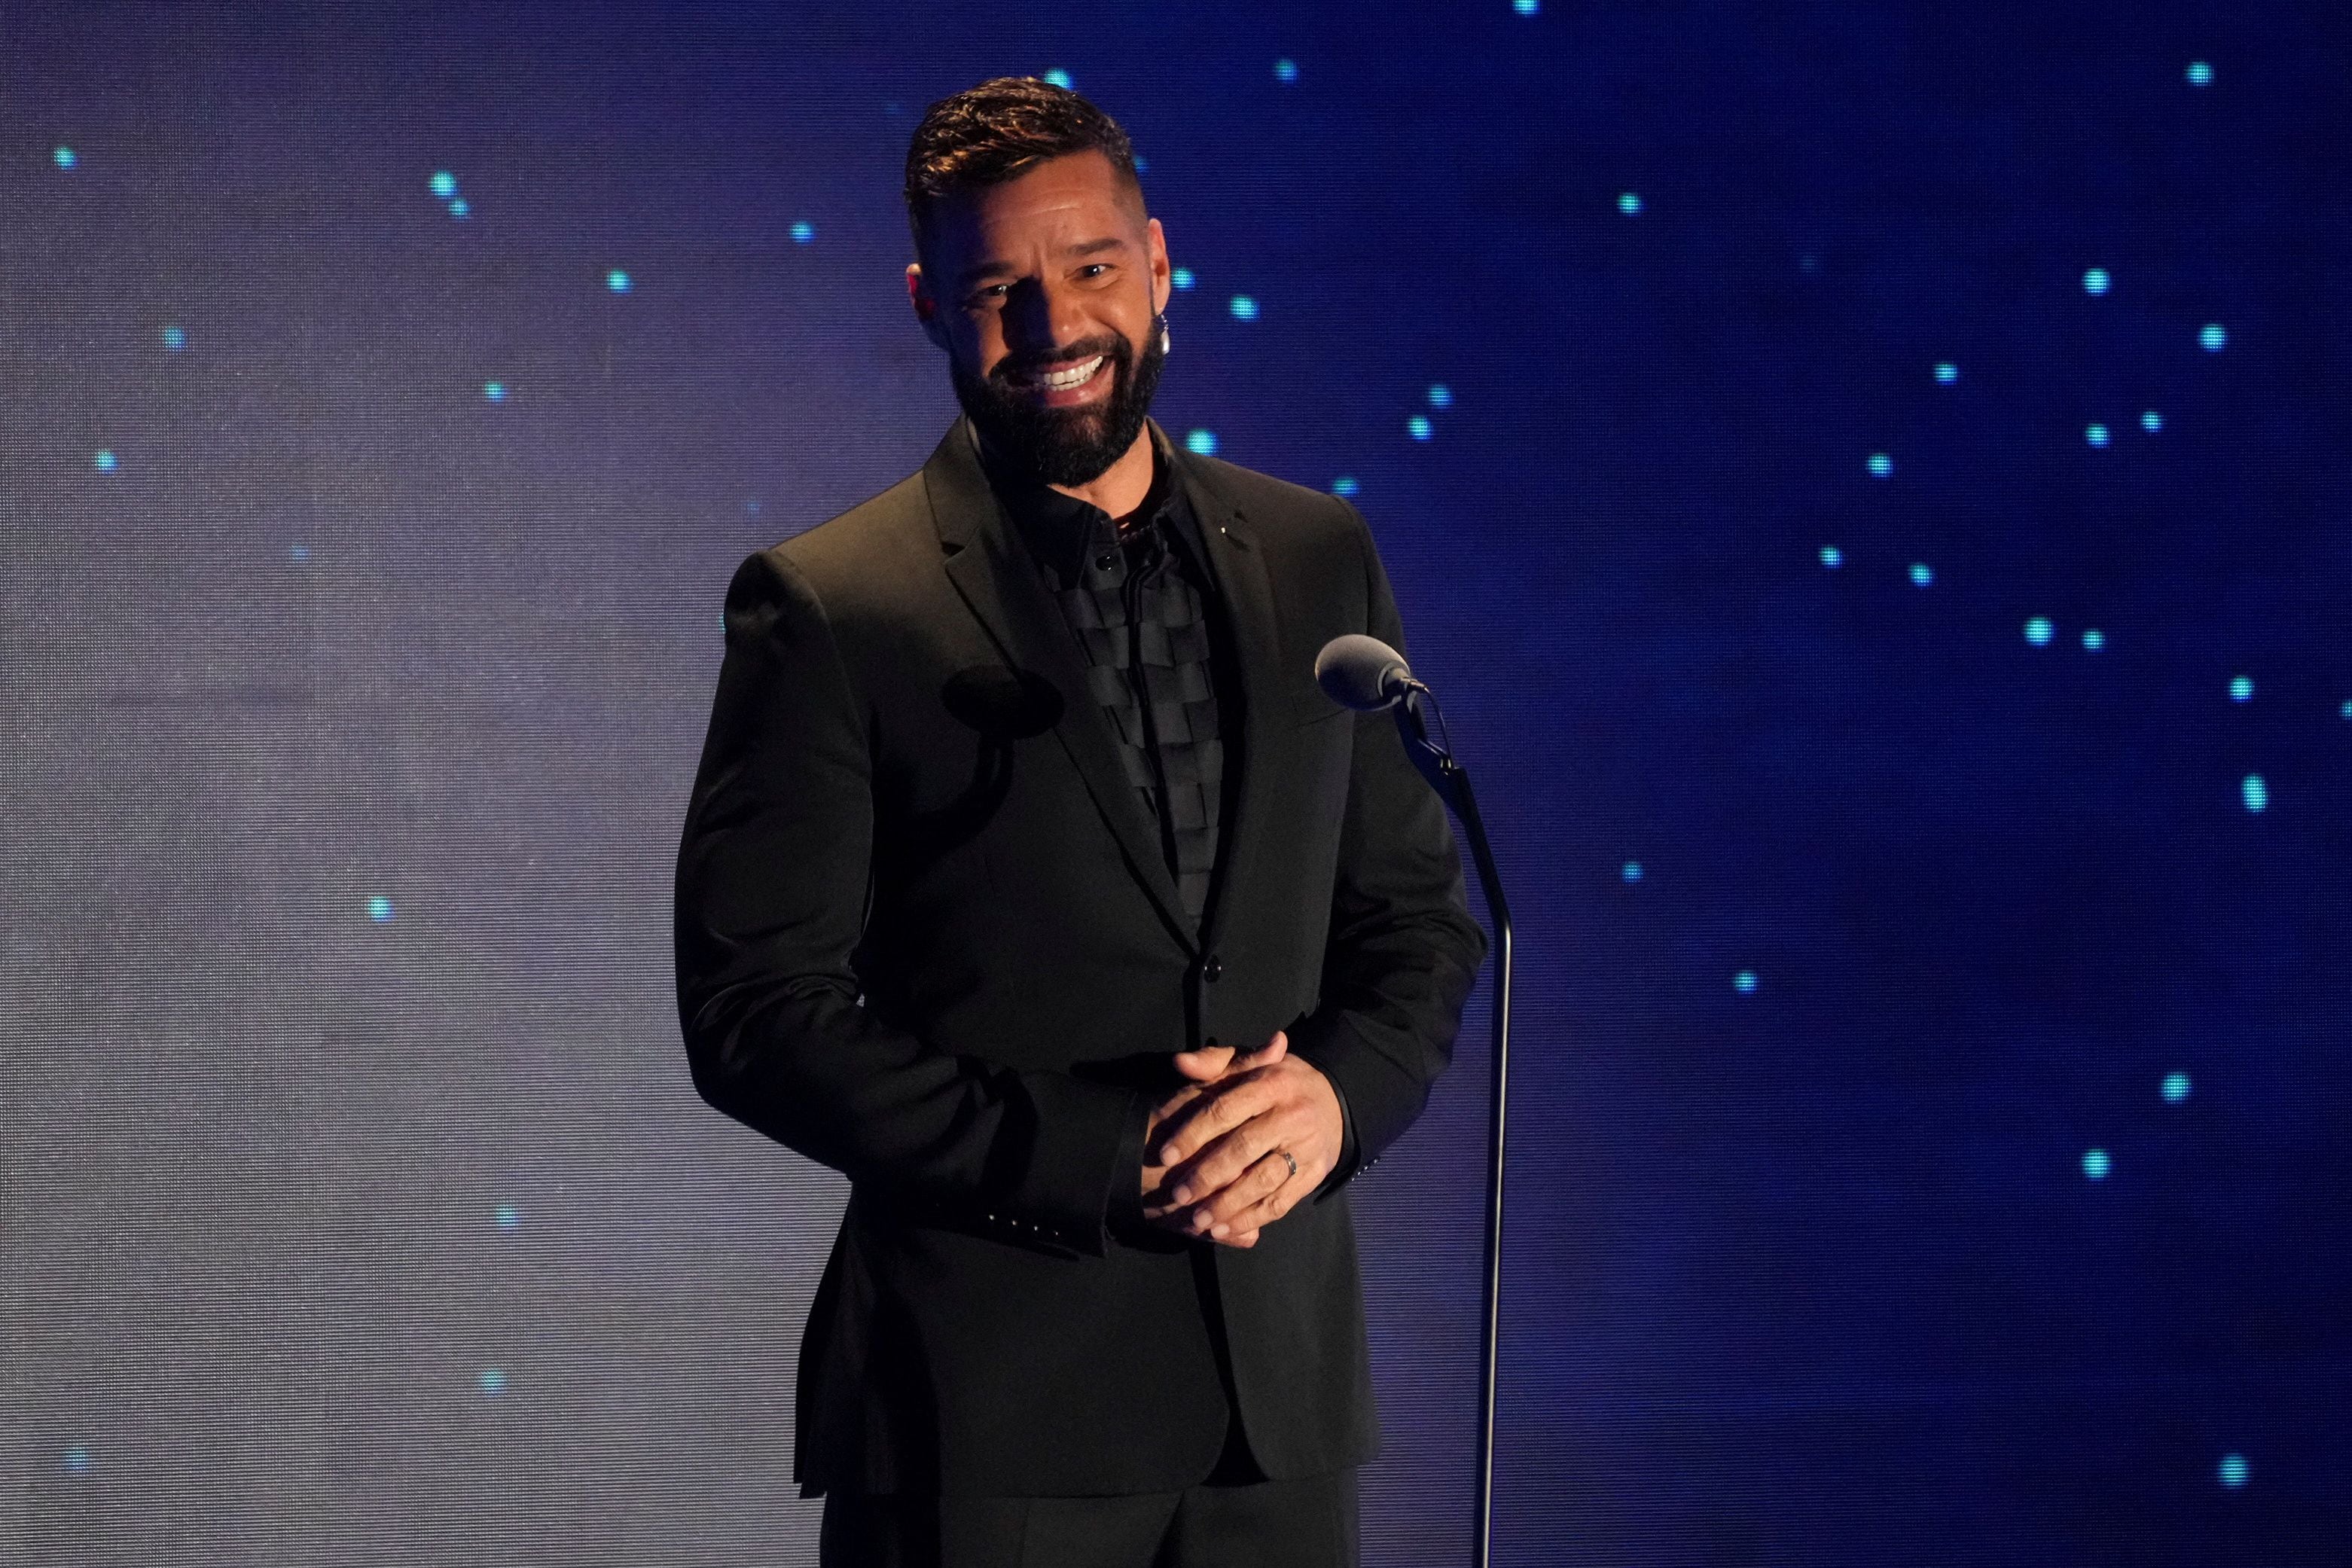 La fortuna de Ricky Martin está valuada en USD 130 millones de dólares (REUTERS/Allison Dinner)